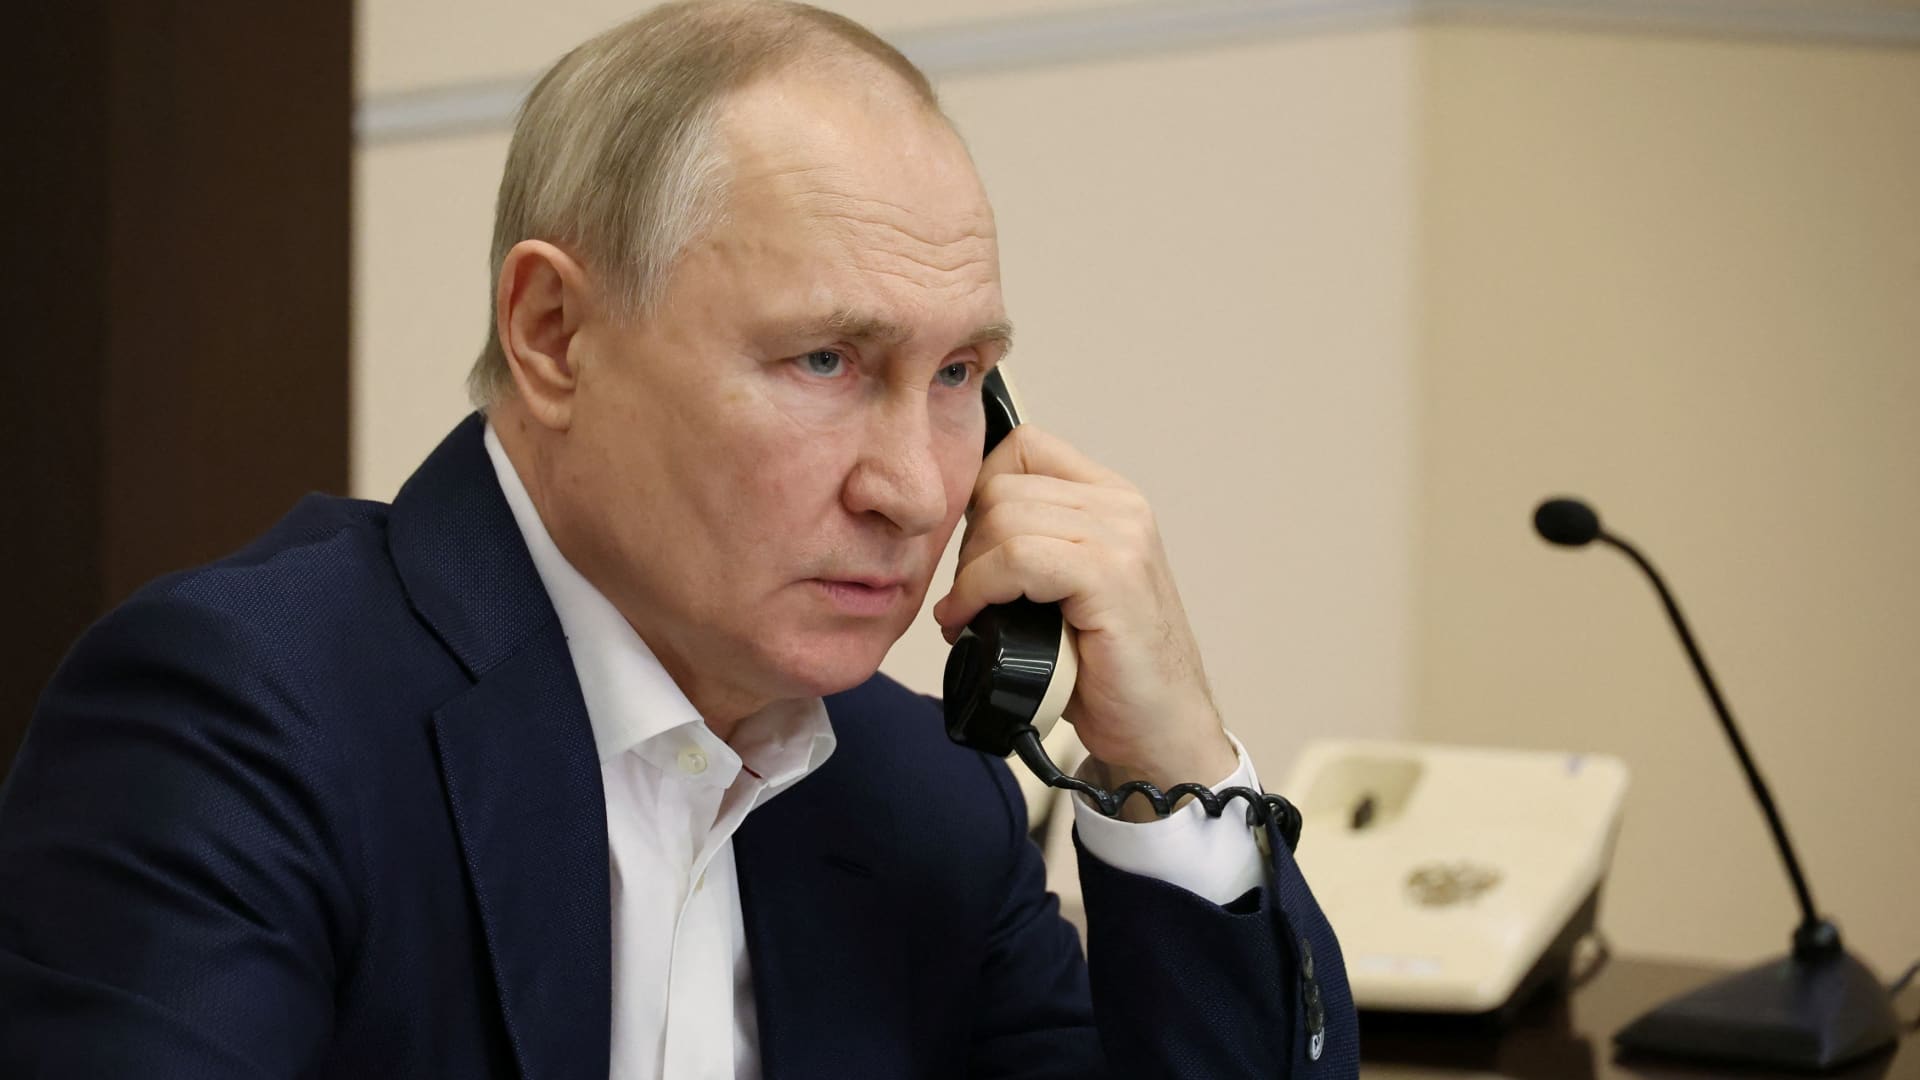 Putin promised to not kill Zelenskyy, former Israeli prime minister says